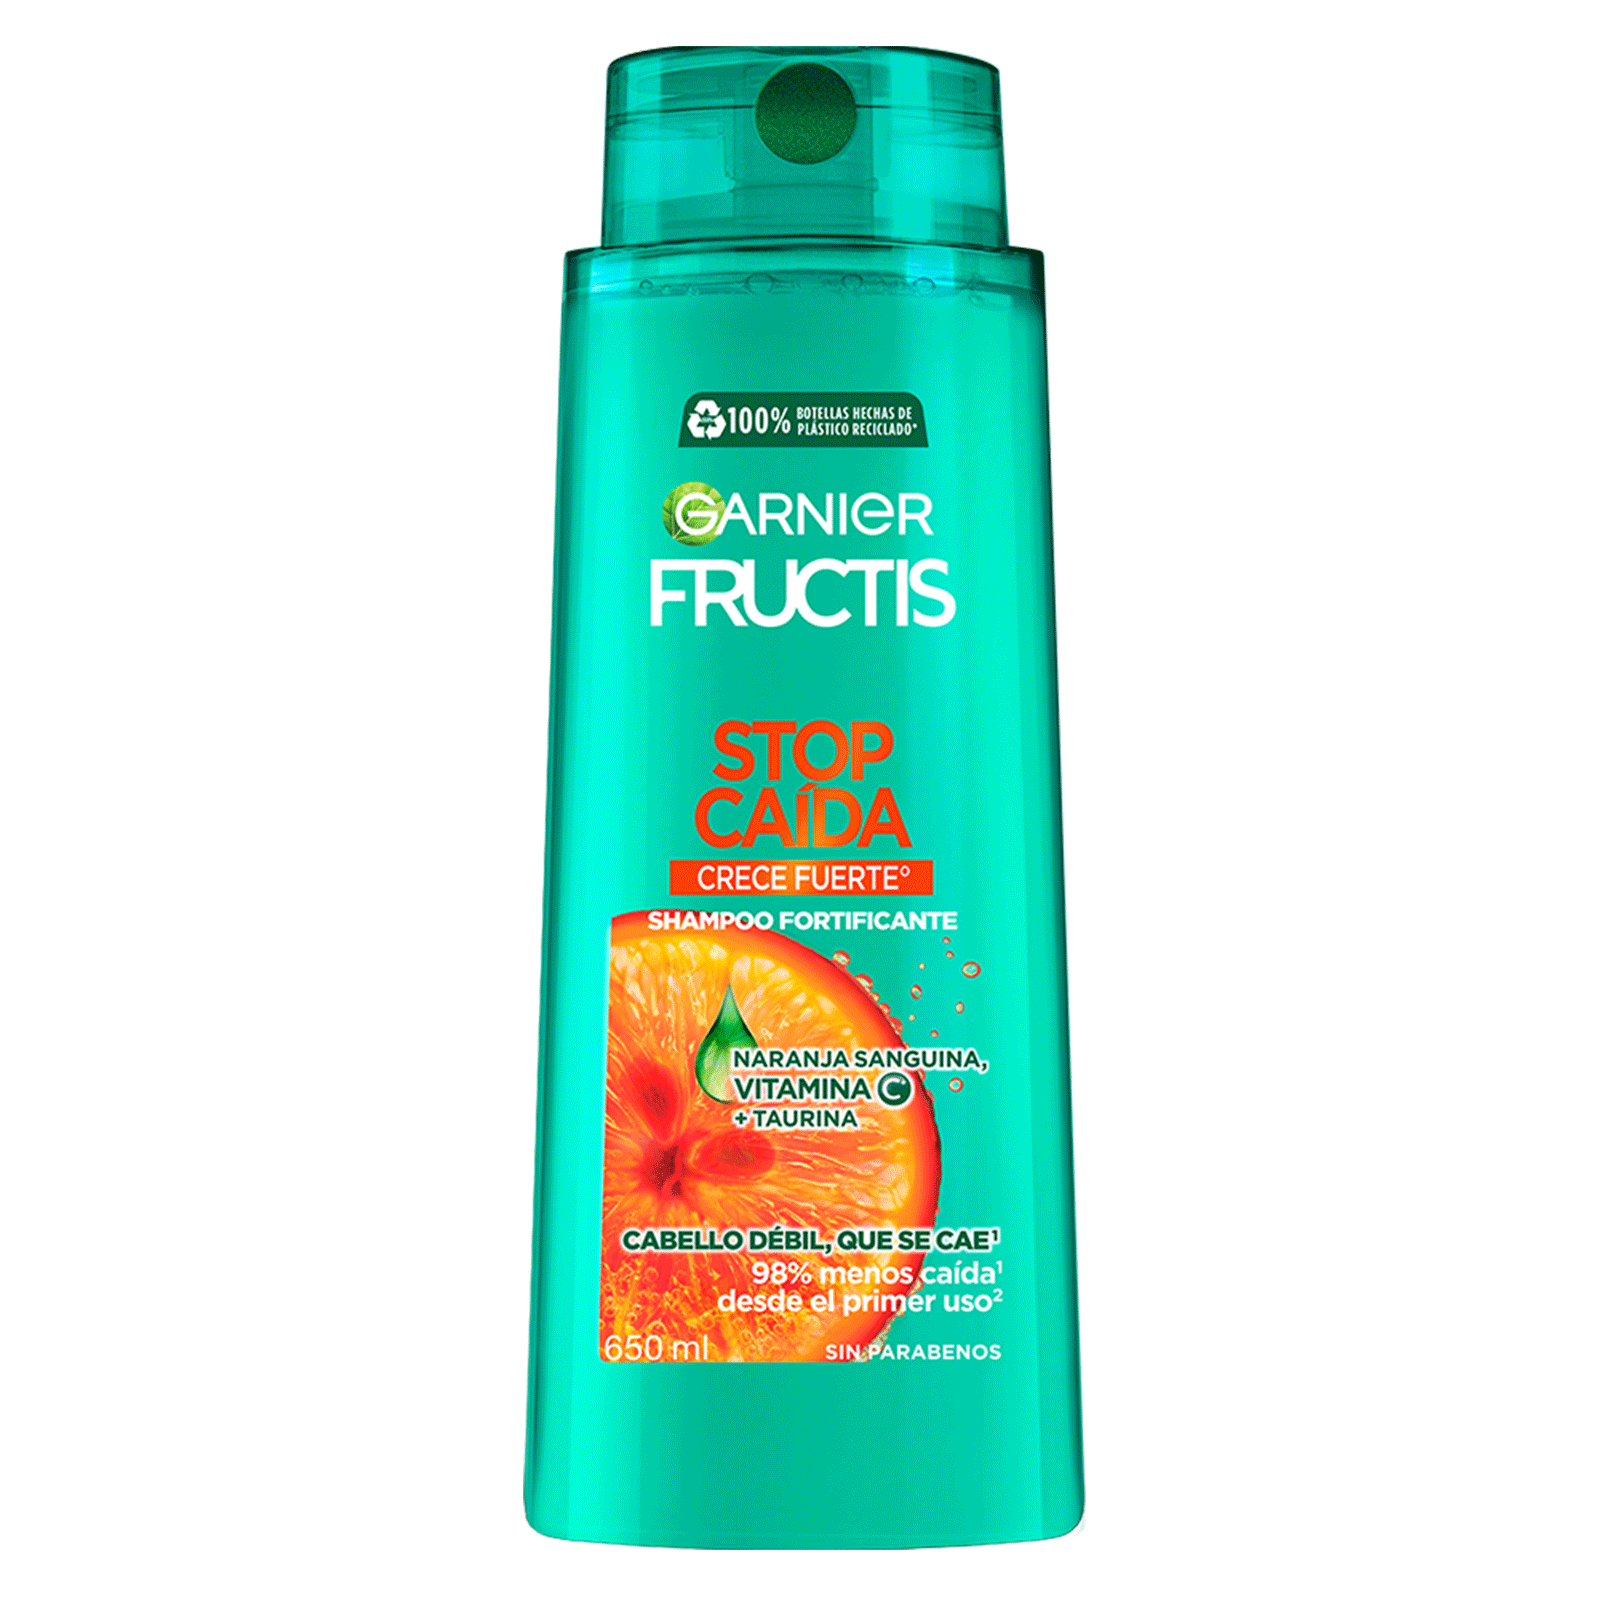 Shampoo Garnier Fructis Stop Caída Crece Fuerte con vitamina C° que reduce la caída del pelo con formula vegana